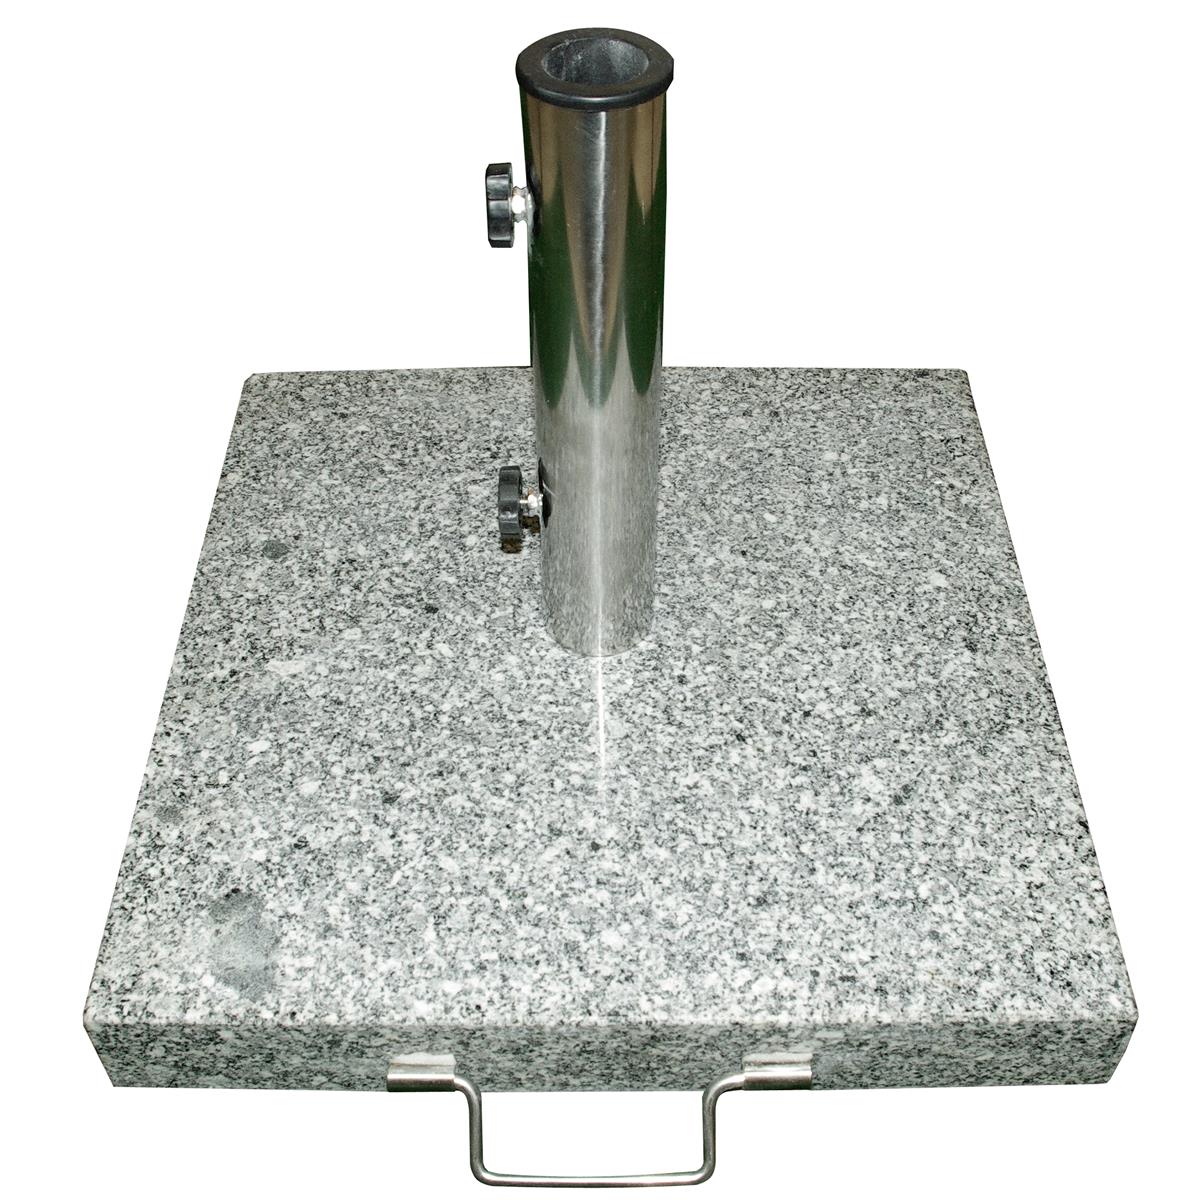 Sonnenschirmständer 40kg Granit poliert grau eckig Edelstahl 50 x 50cm Griff